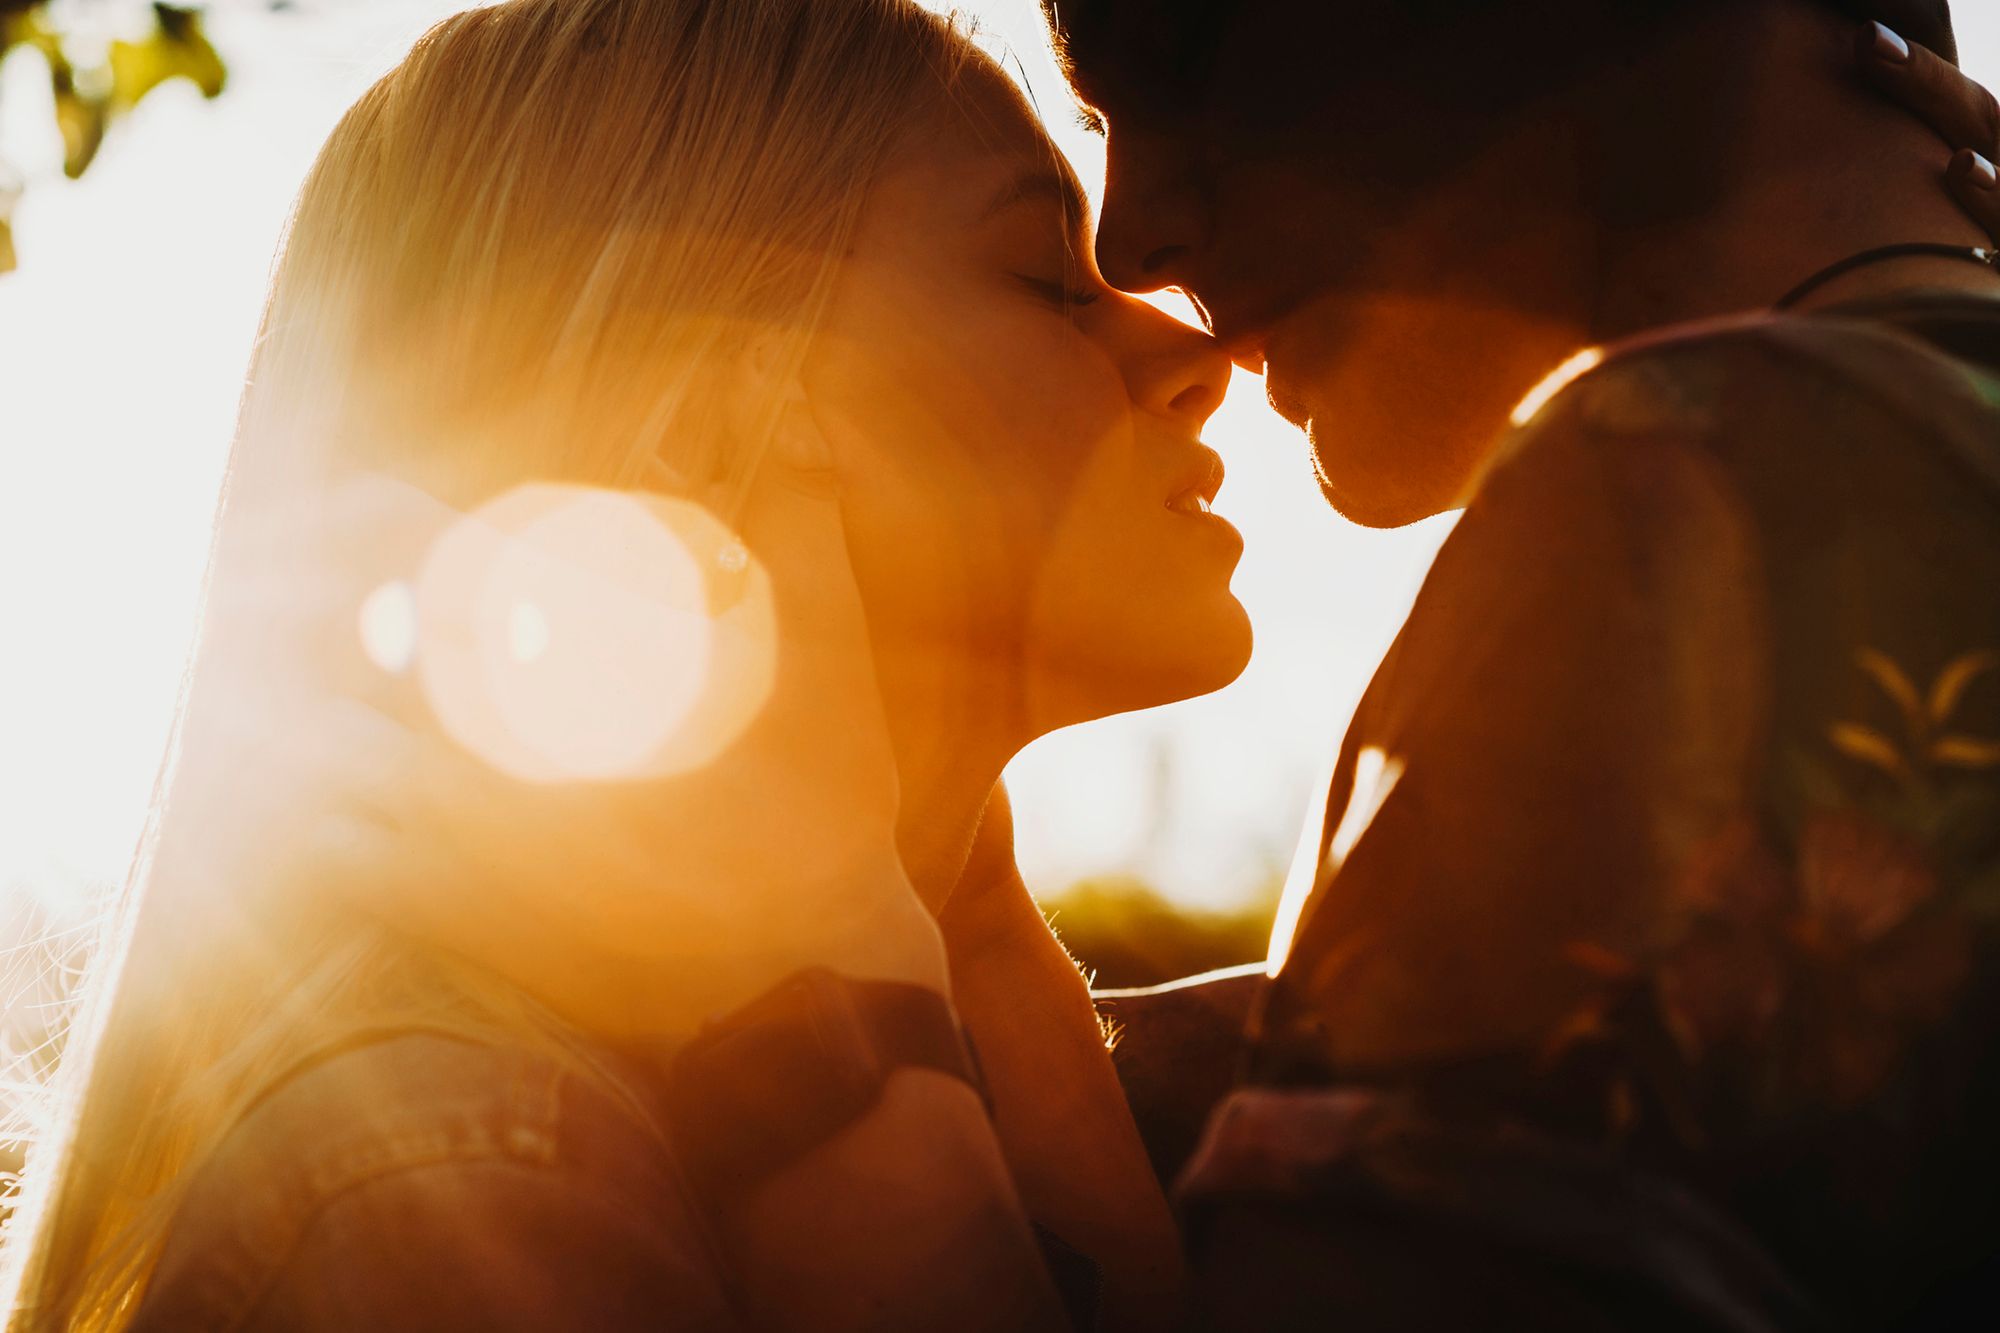 Mann und Frau küssen sich im Sonnenlicht